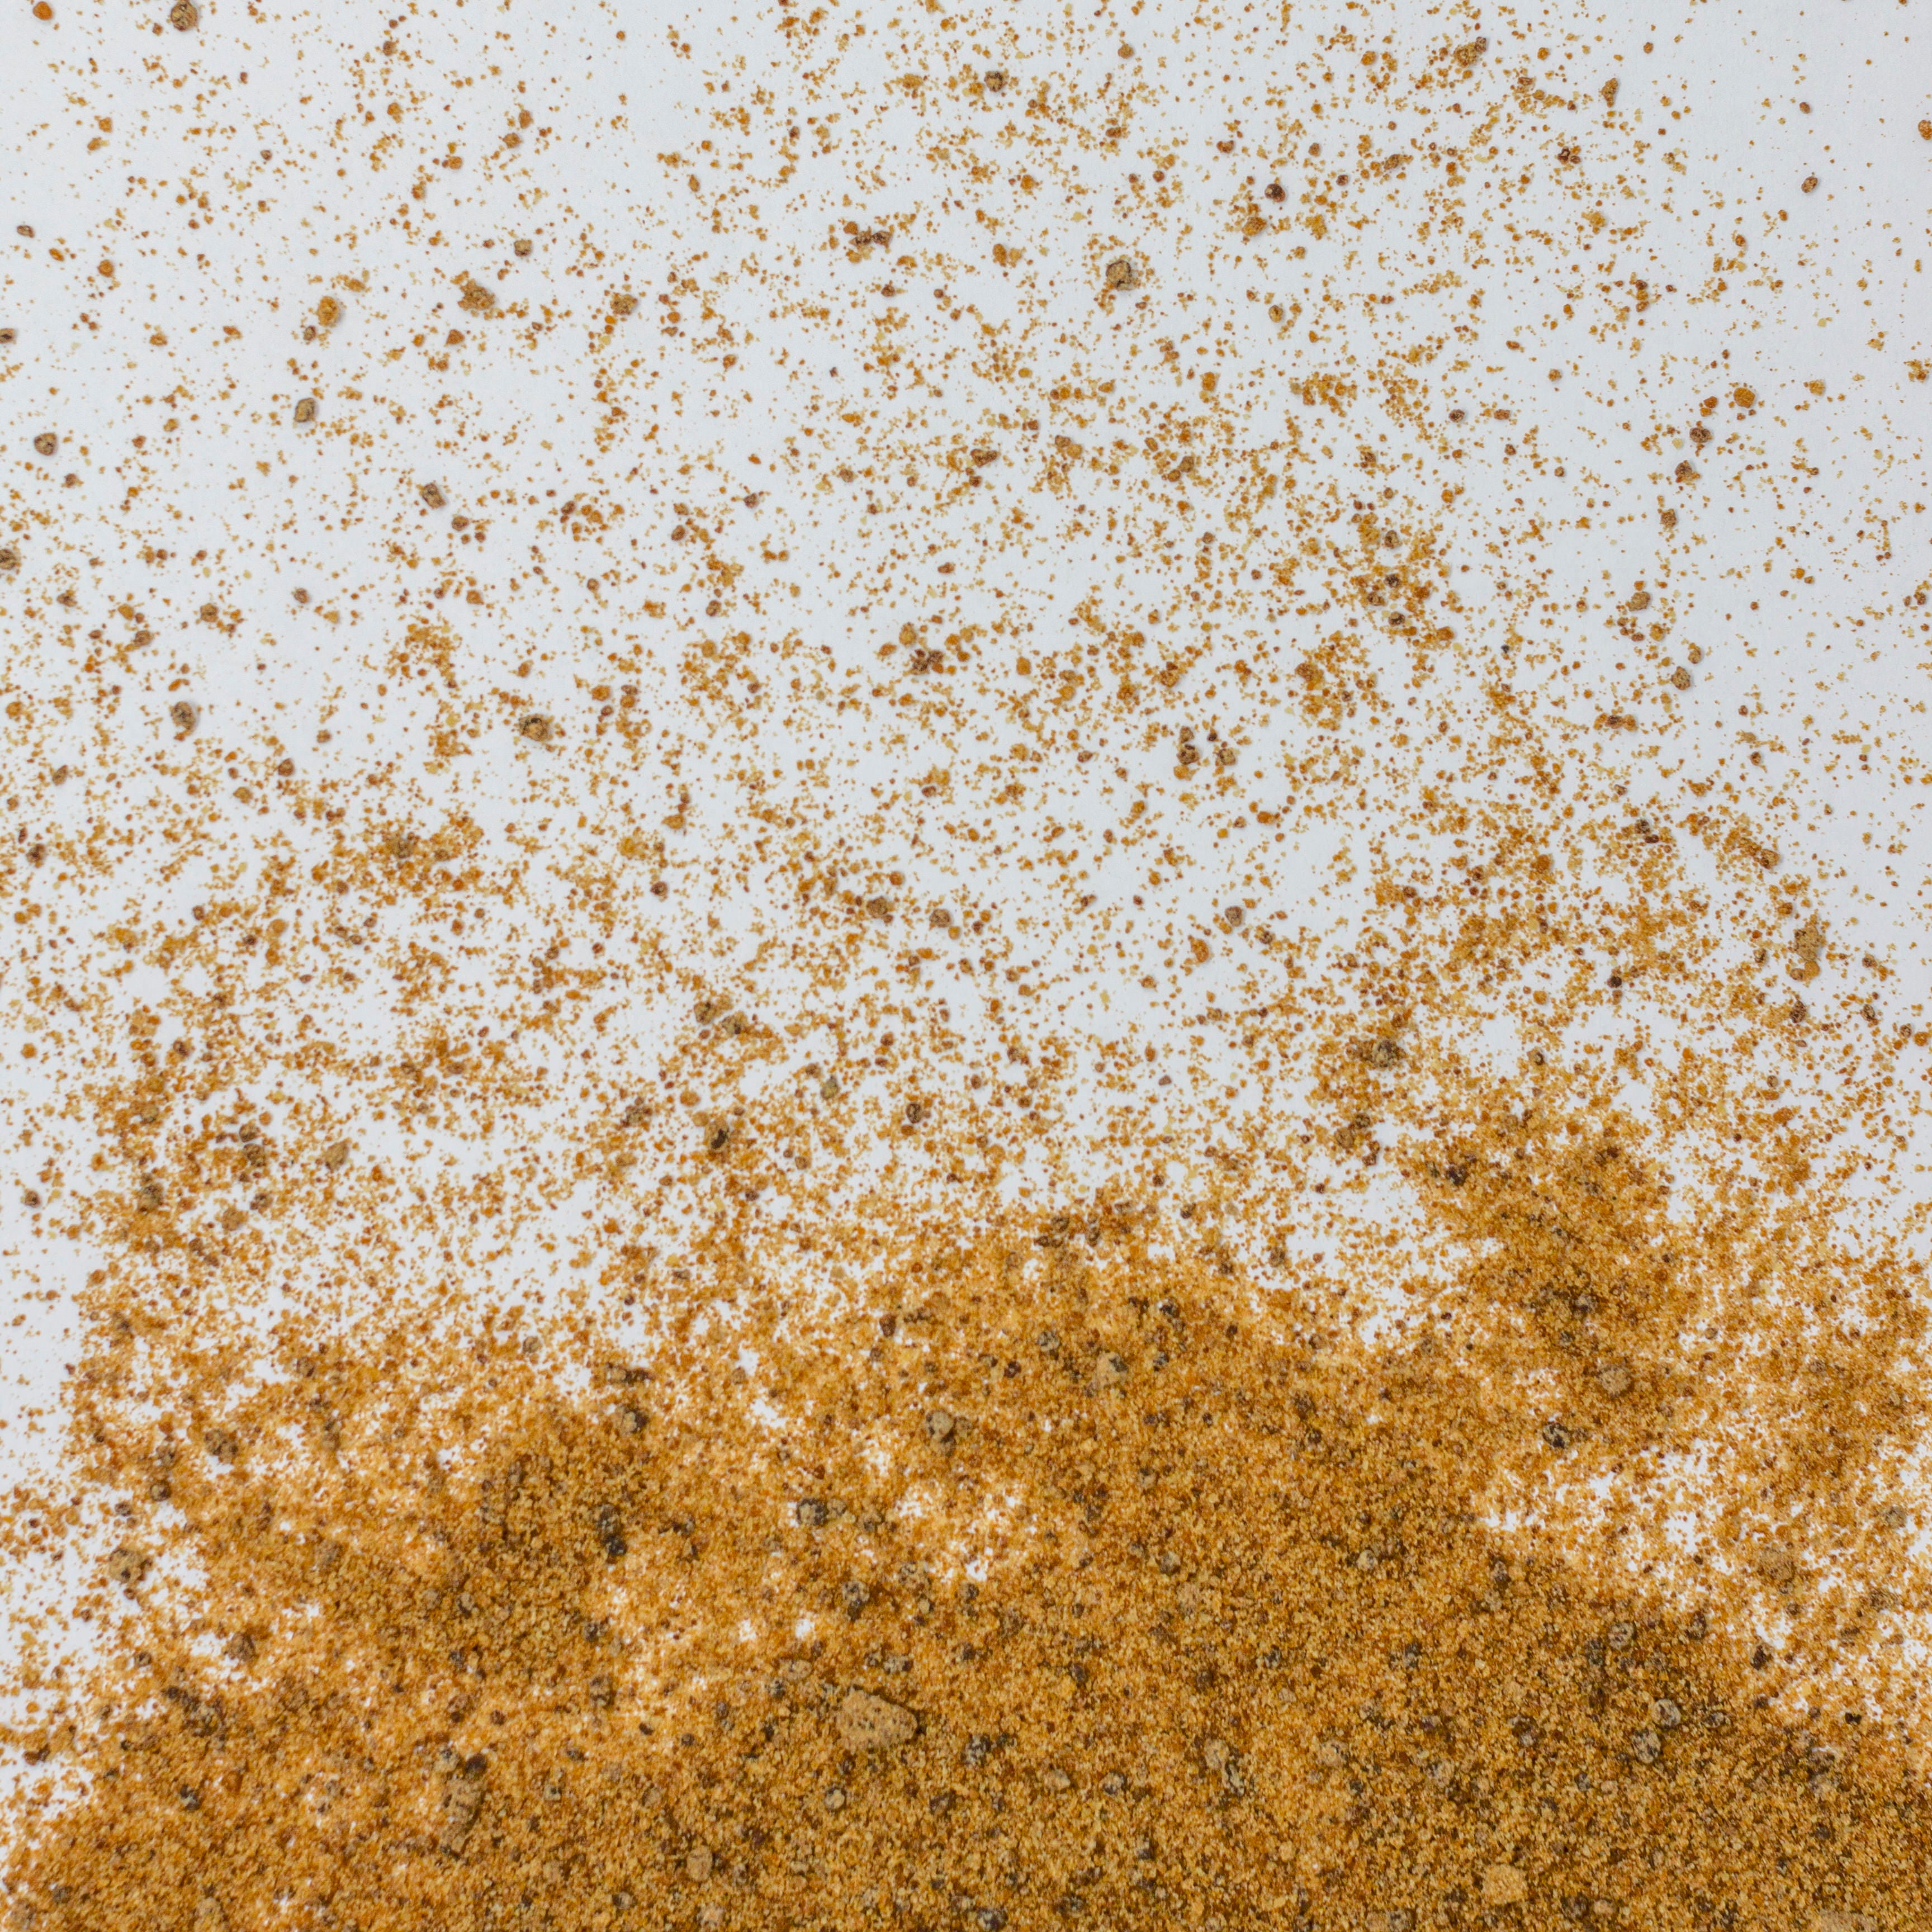 Polvo de color dorado con textura cristalina, aroma dulce y ligero sabor a caramelo. 1:1 es sustituto perfecto del dulzor del azúcar, una cucharada equivale a una cuchara de azúcar de caña normal.